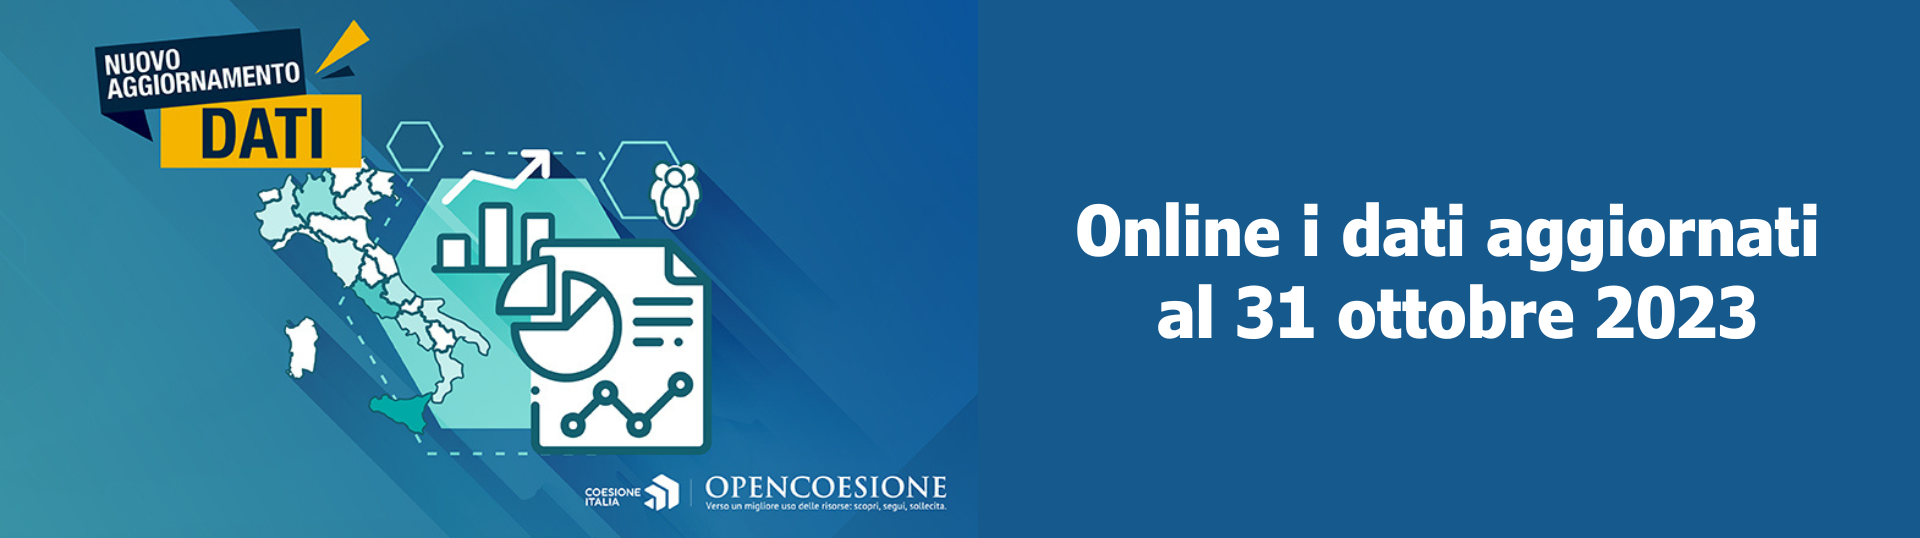 OpenCoesione: online i dati aggiornati al 31 ottobre 2023